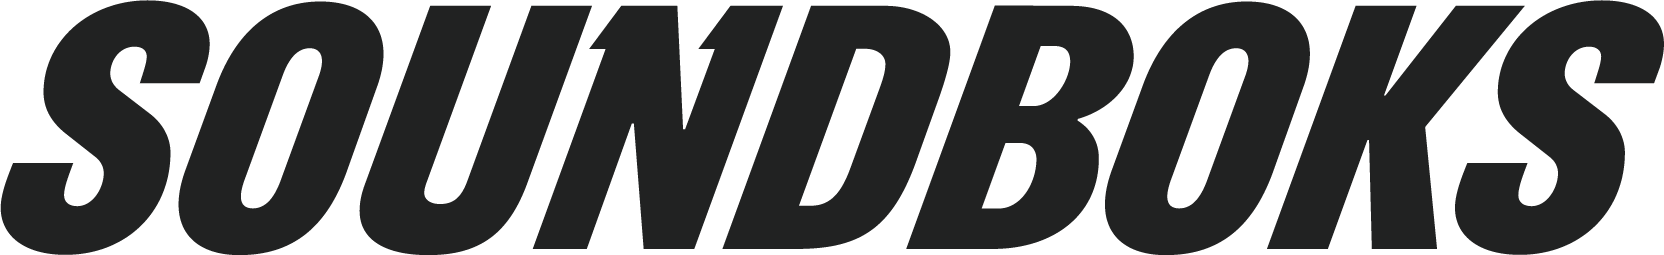 Logo von Soundboks in Schwarz